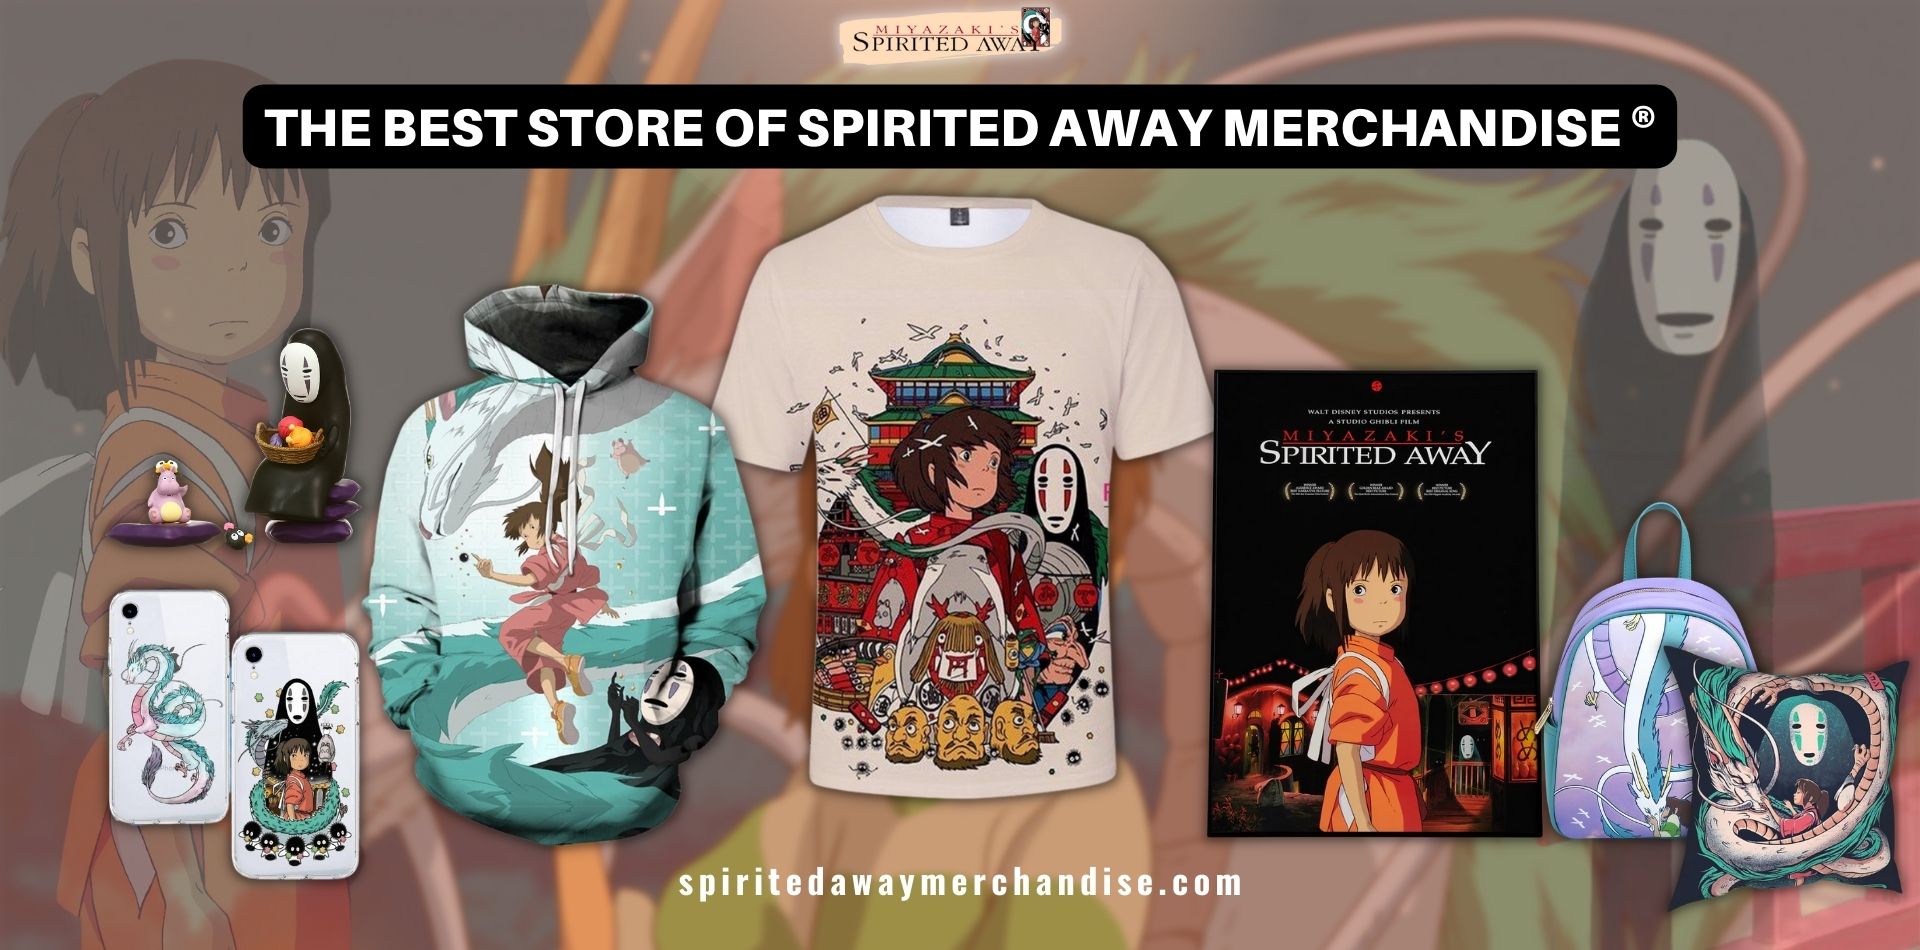 Spirited Away Merch - Official Spirited Away® Merchandise Store